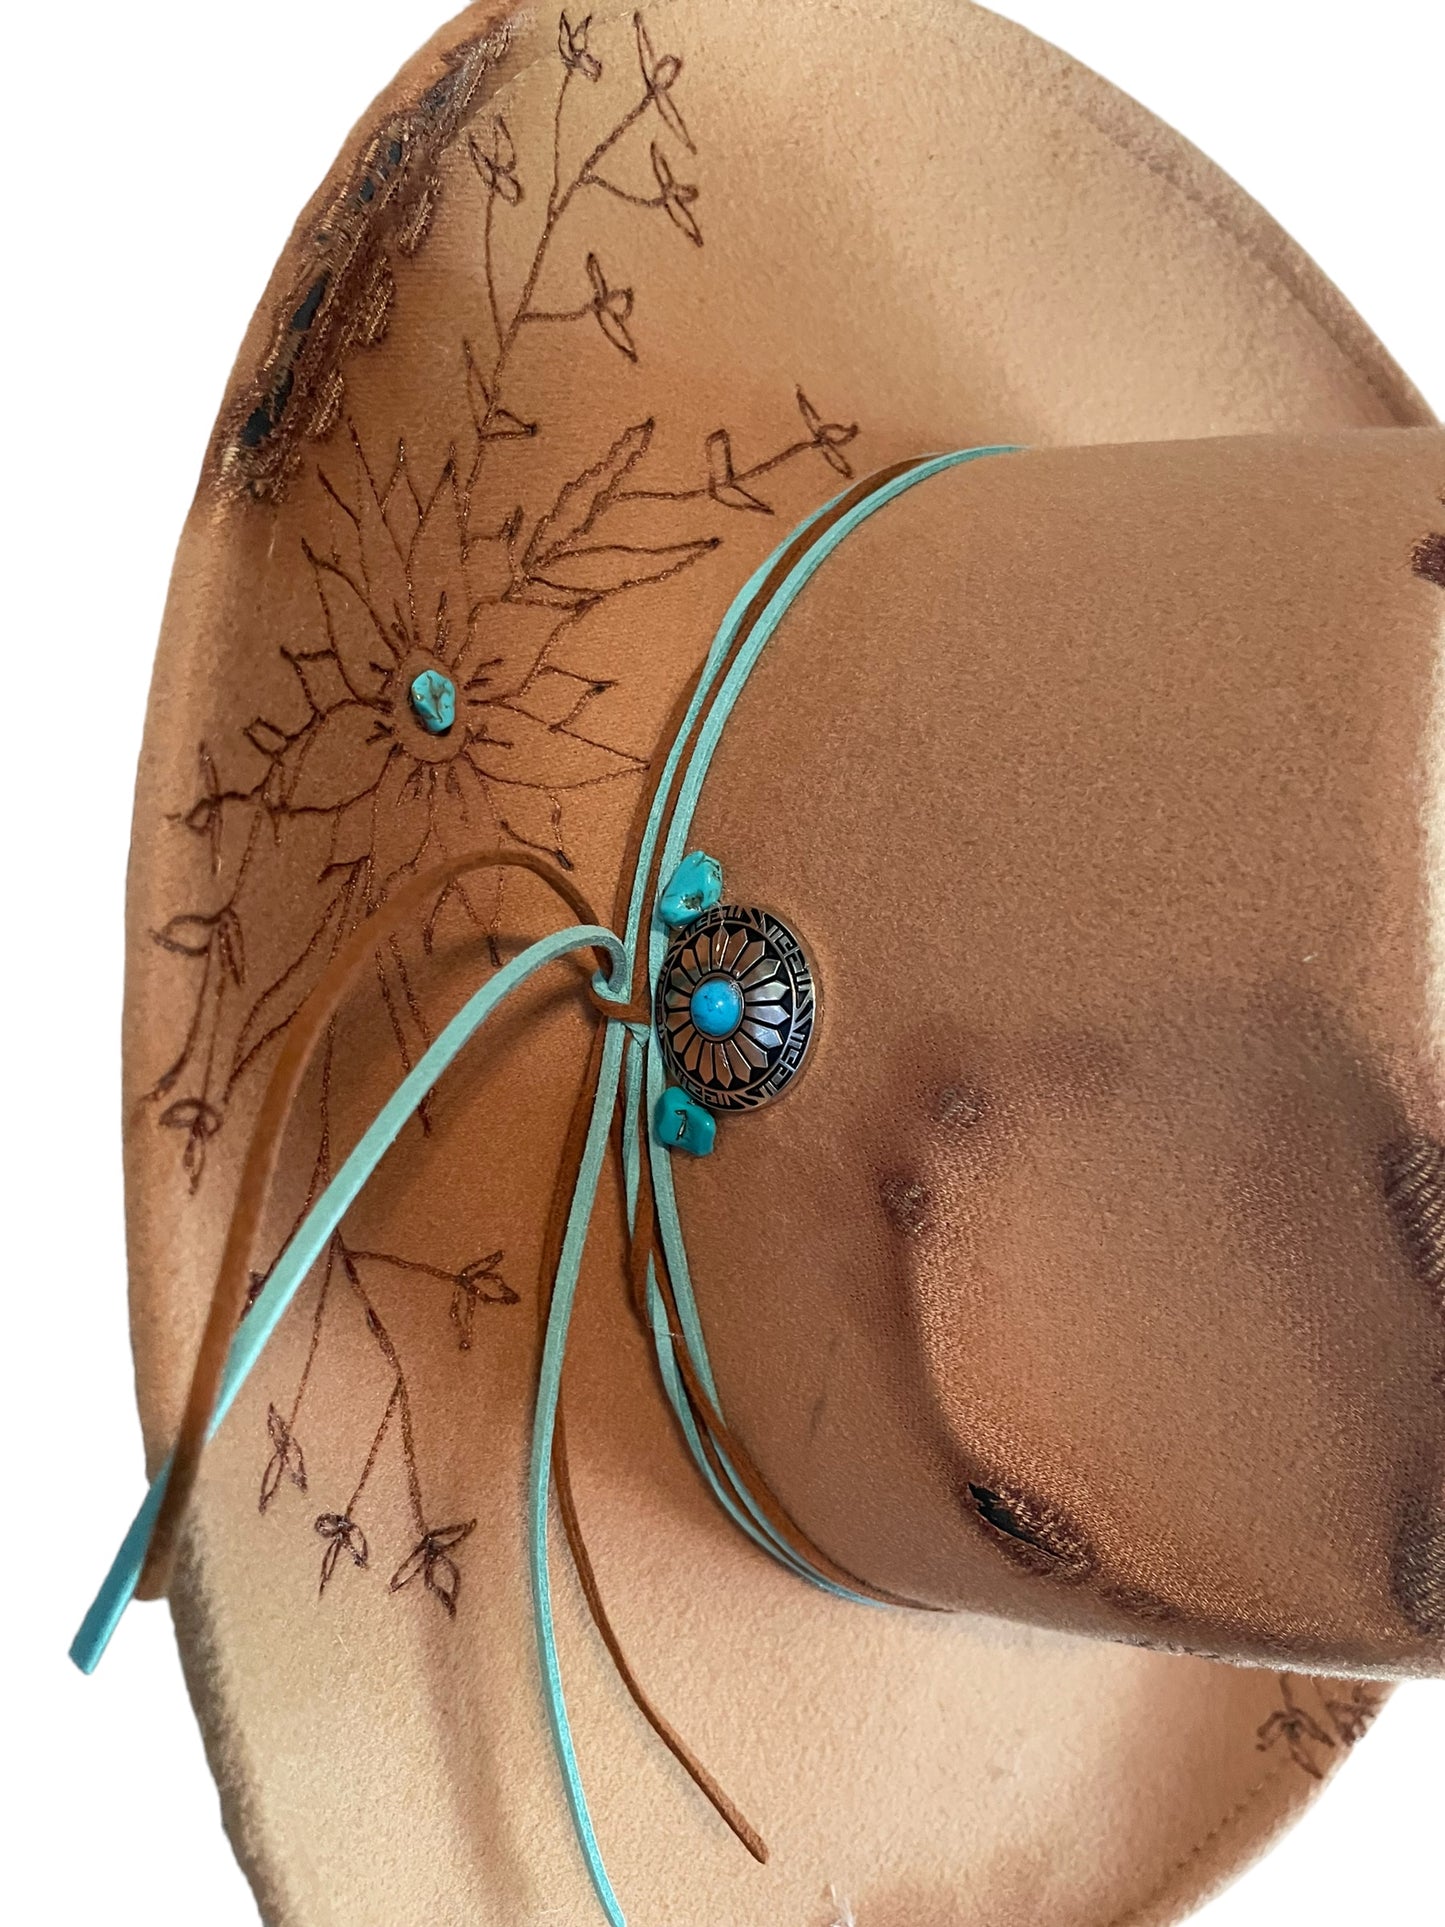 Custom Burned & Designed Tan & Turquoise Western Adjustable Hat